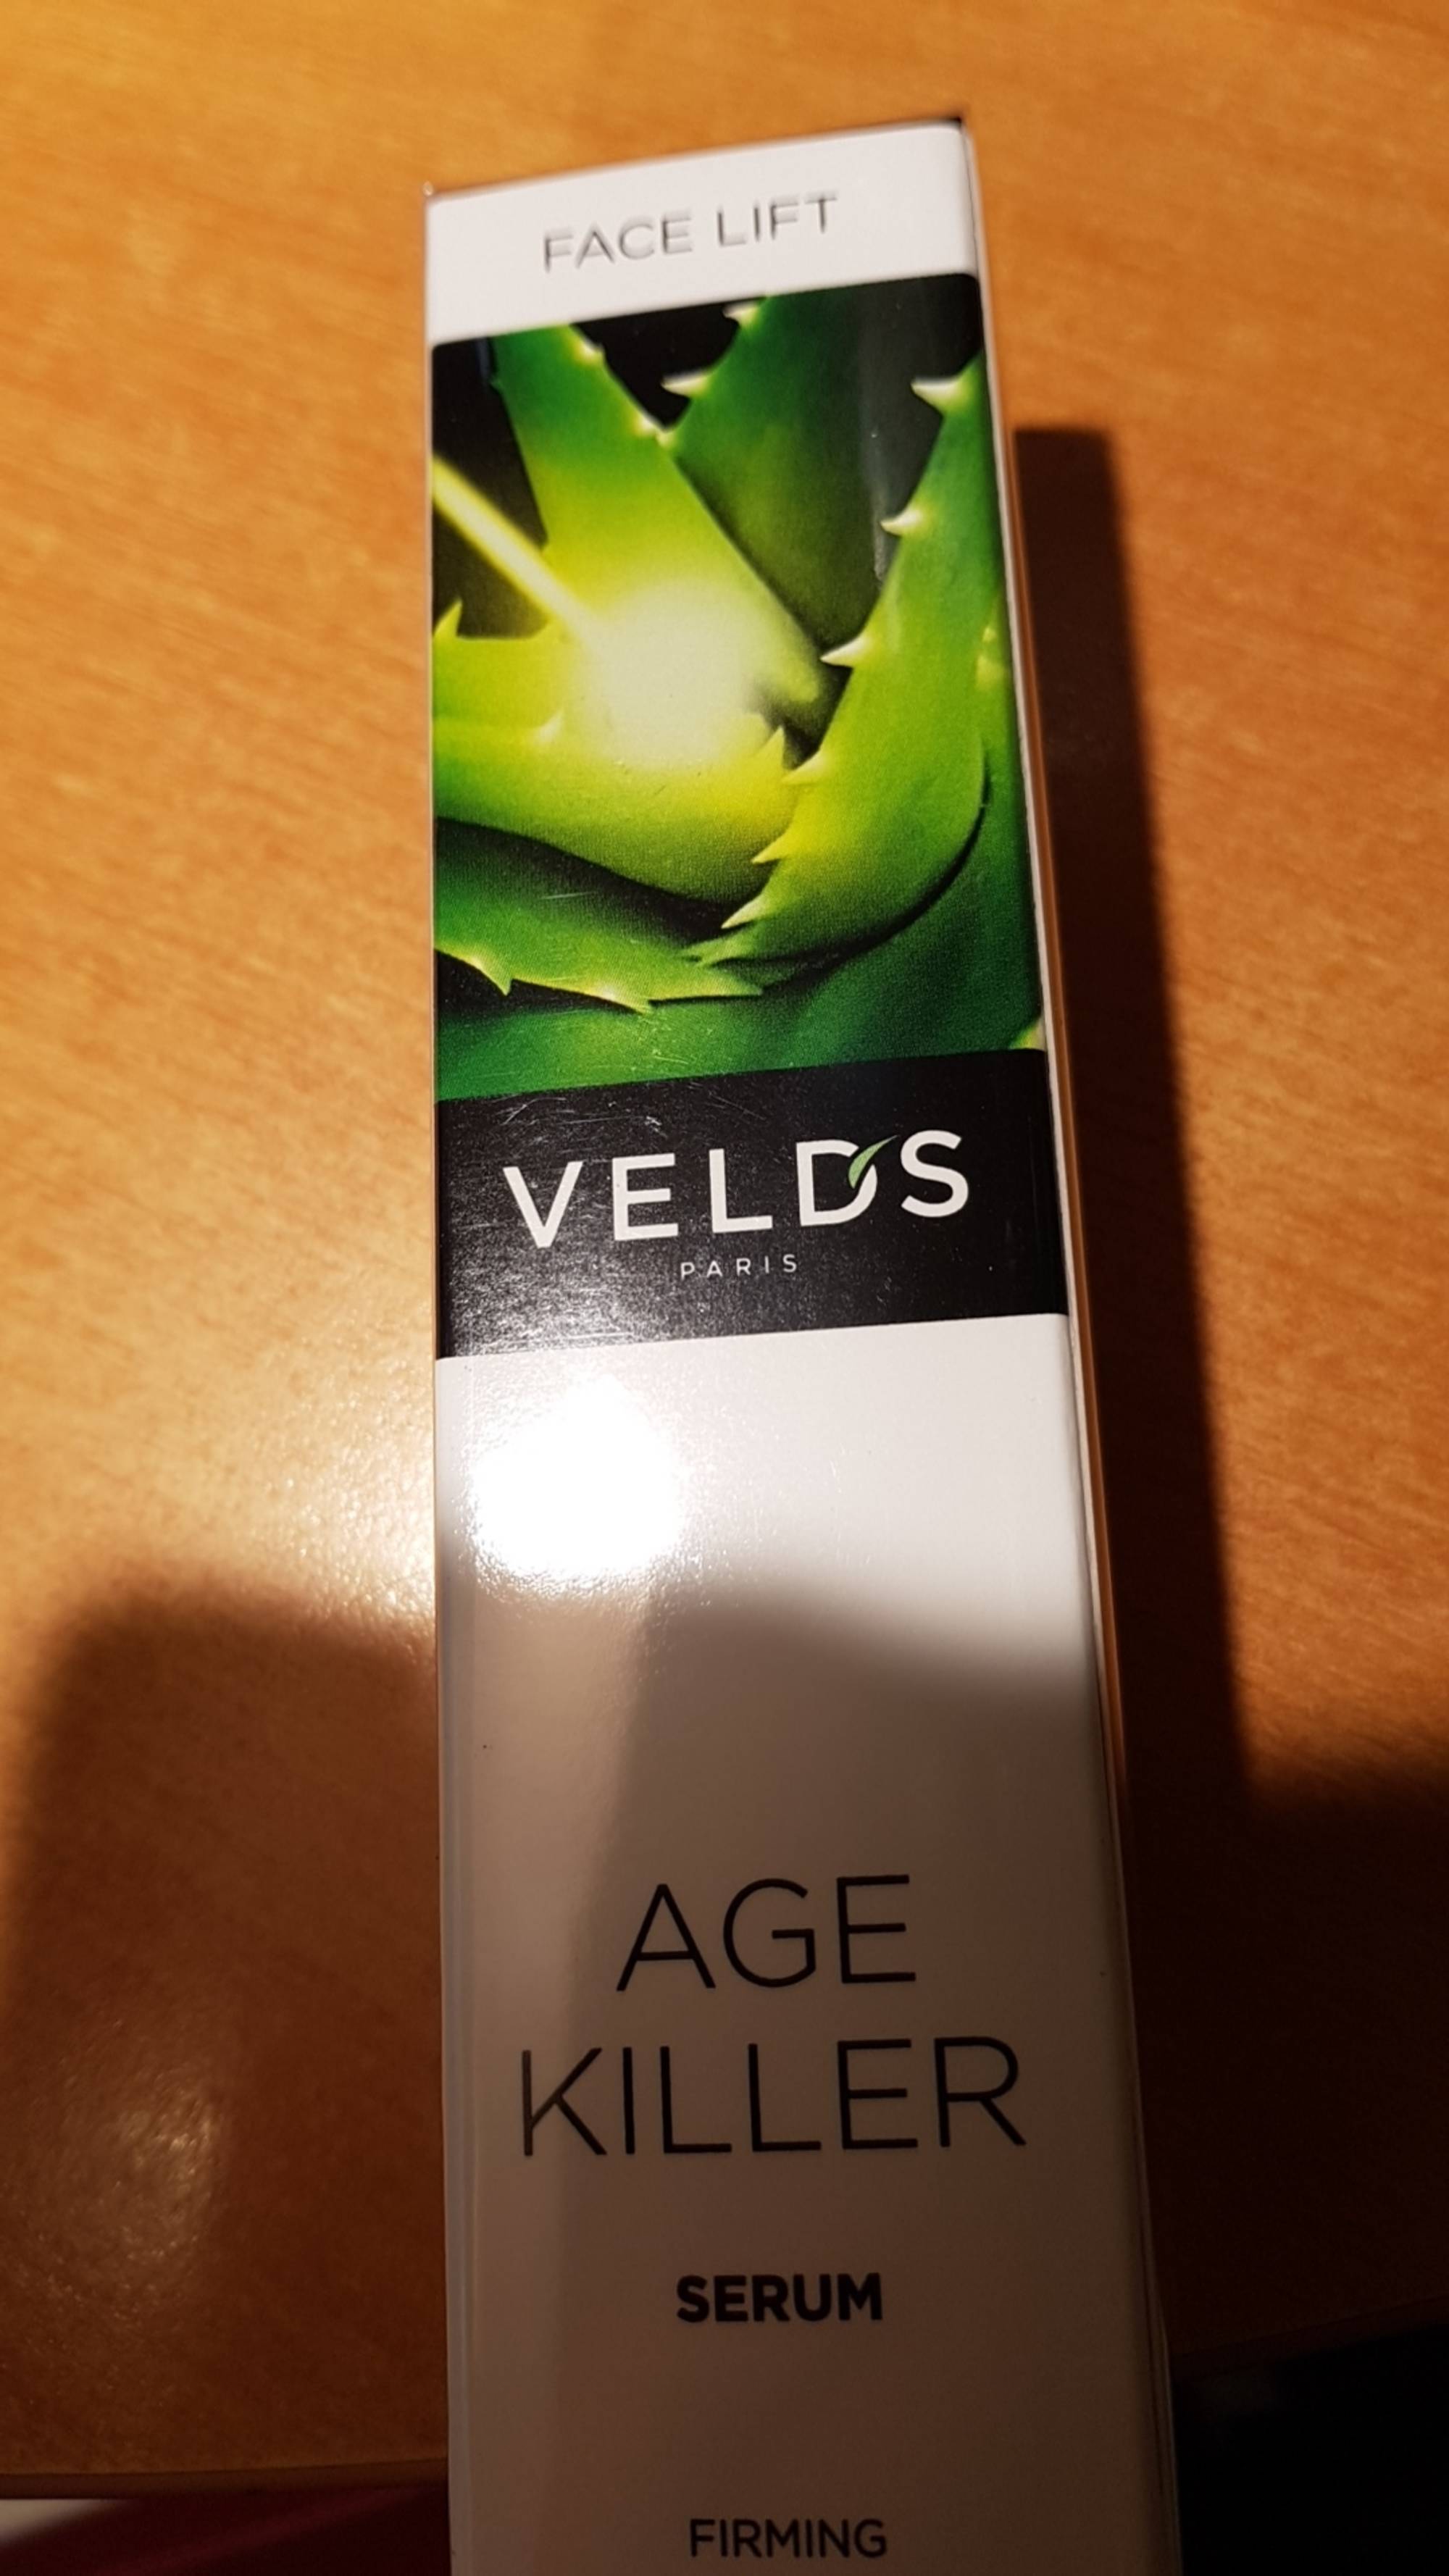 VELD'S - Age killer - Serum